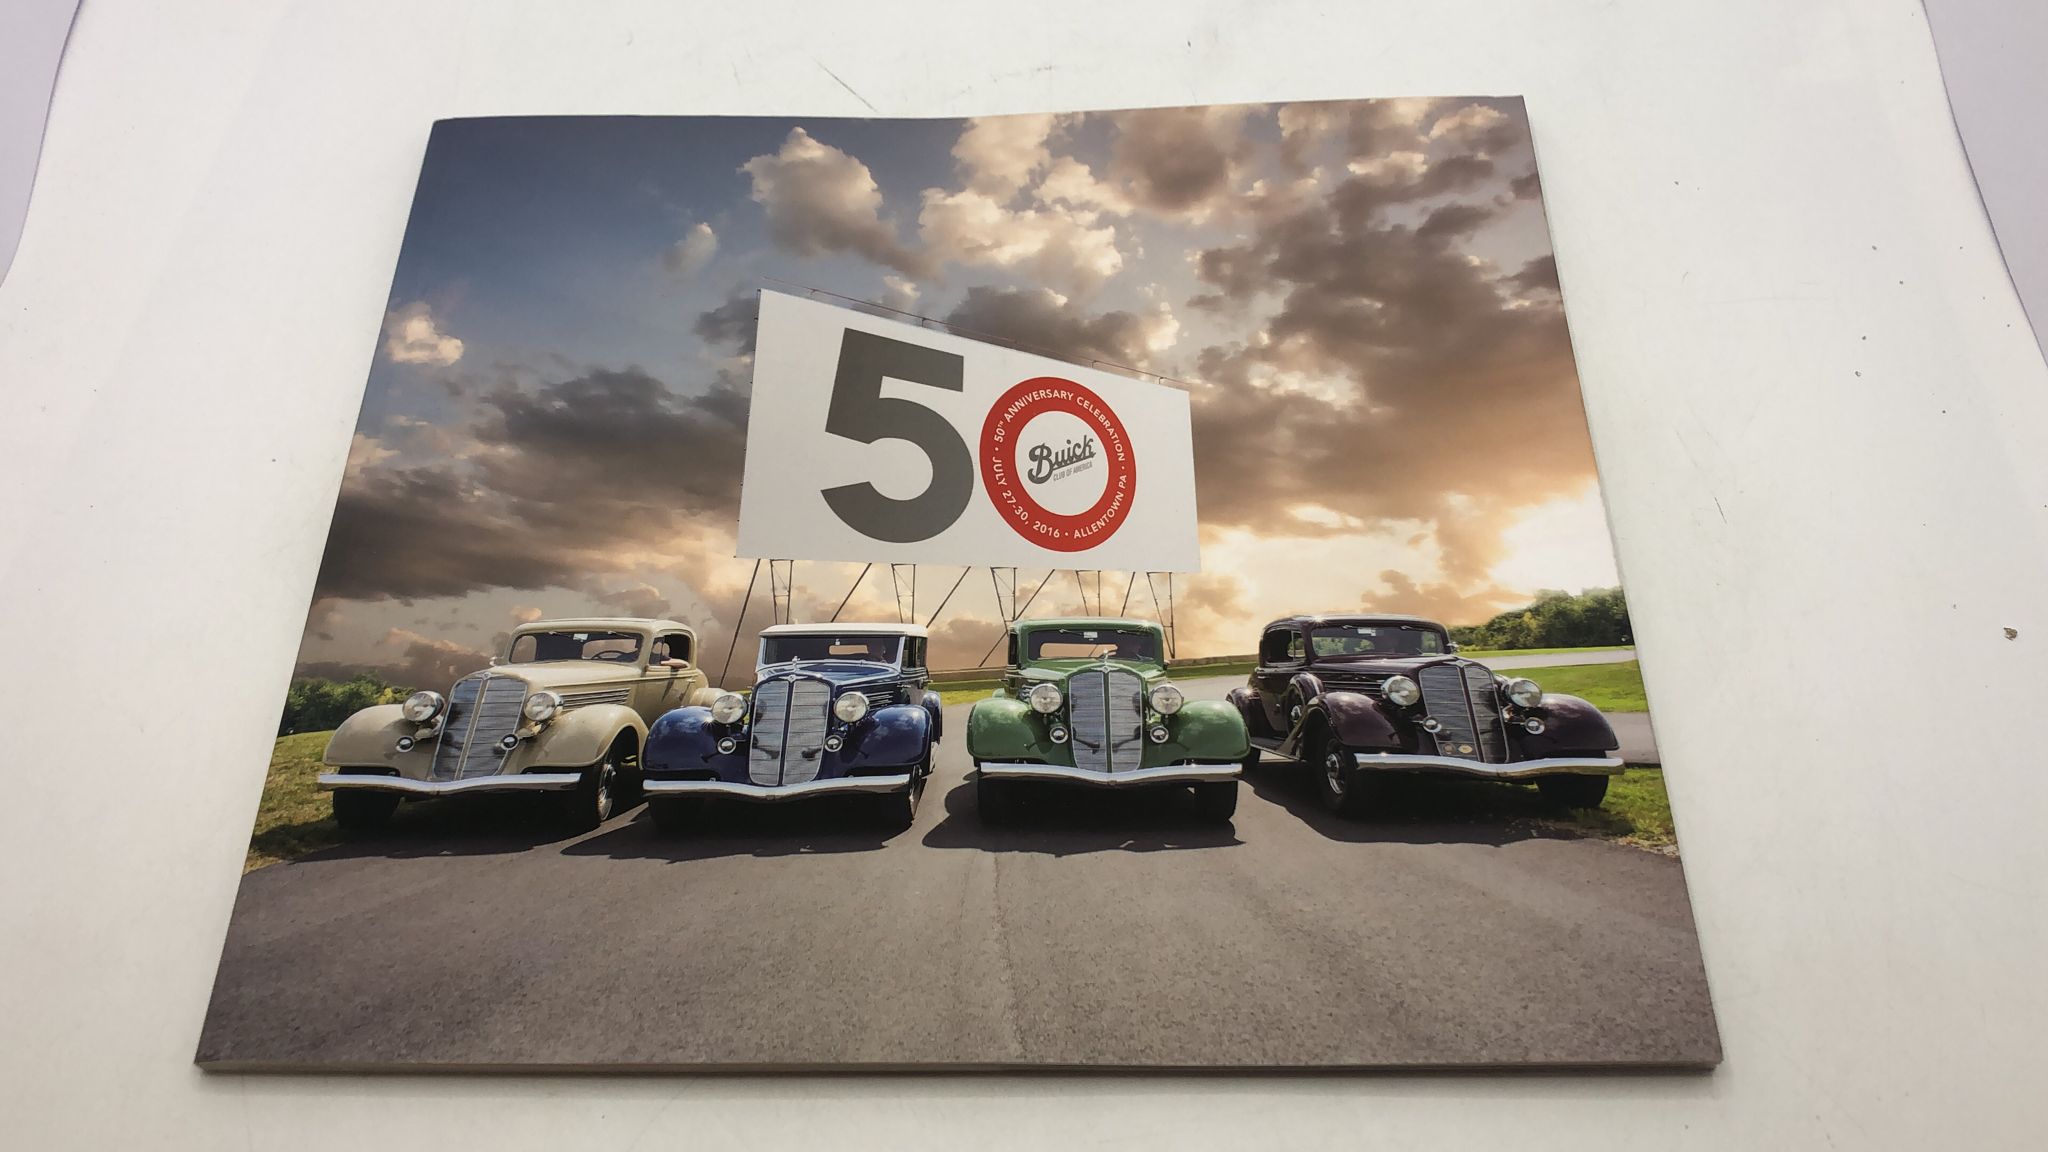 Presentazione Buick per i 50 anni